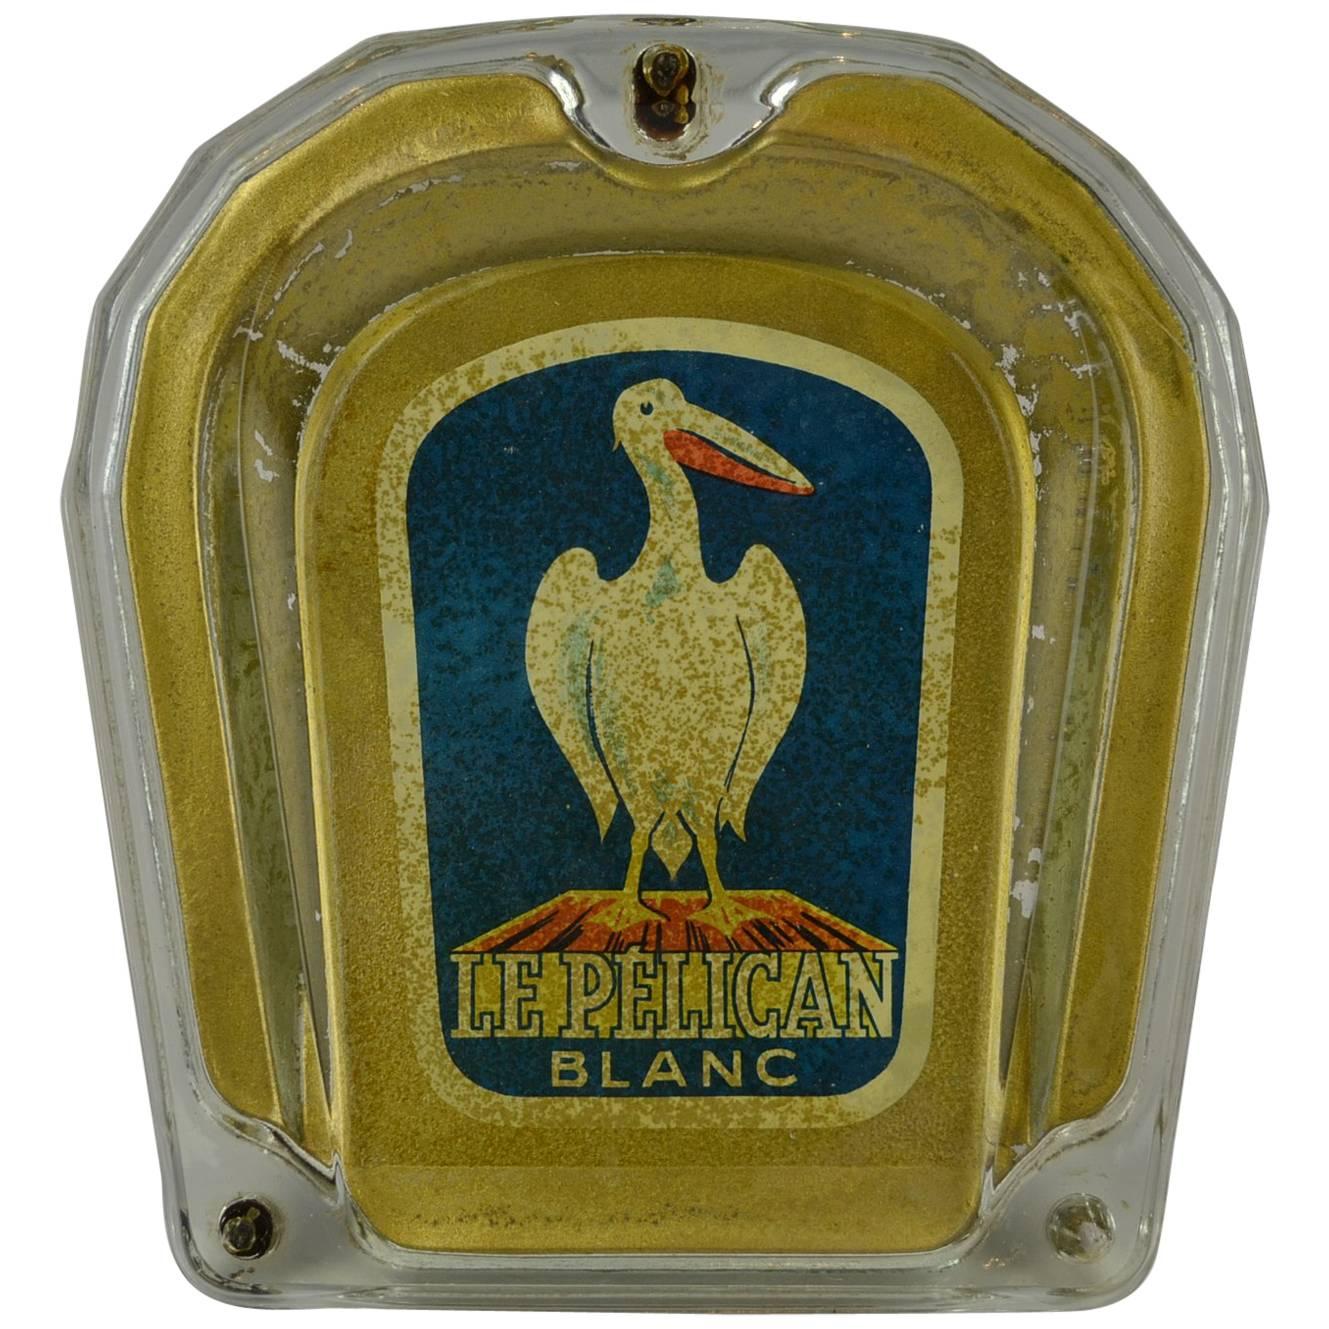 Pelican Blanc-Glasgeldbörse mit Pelikanvogel, Schweiz, 1950er Jahre